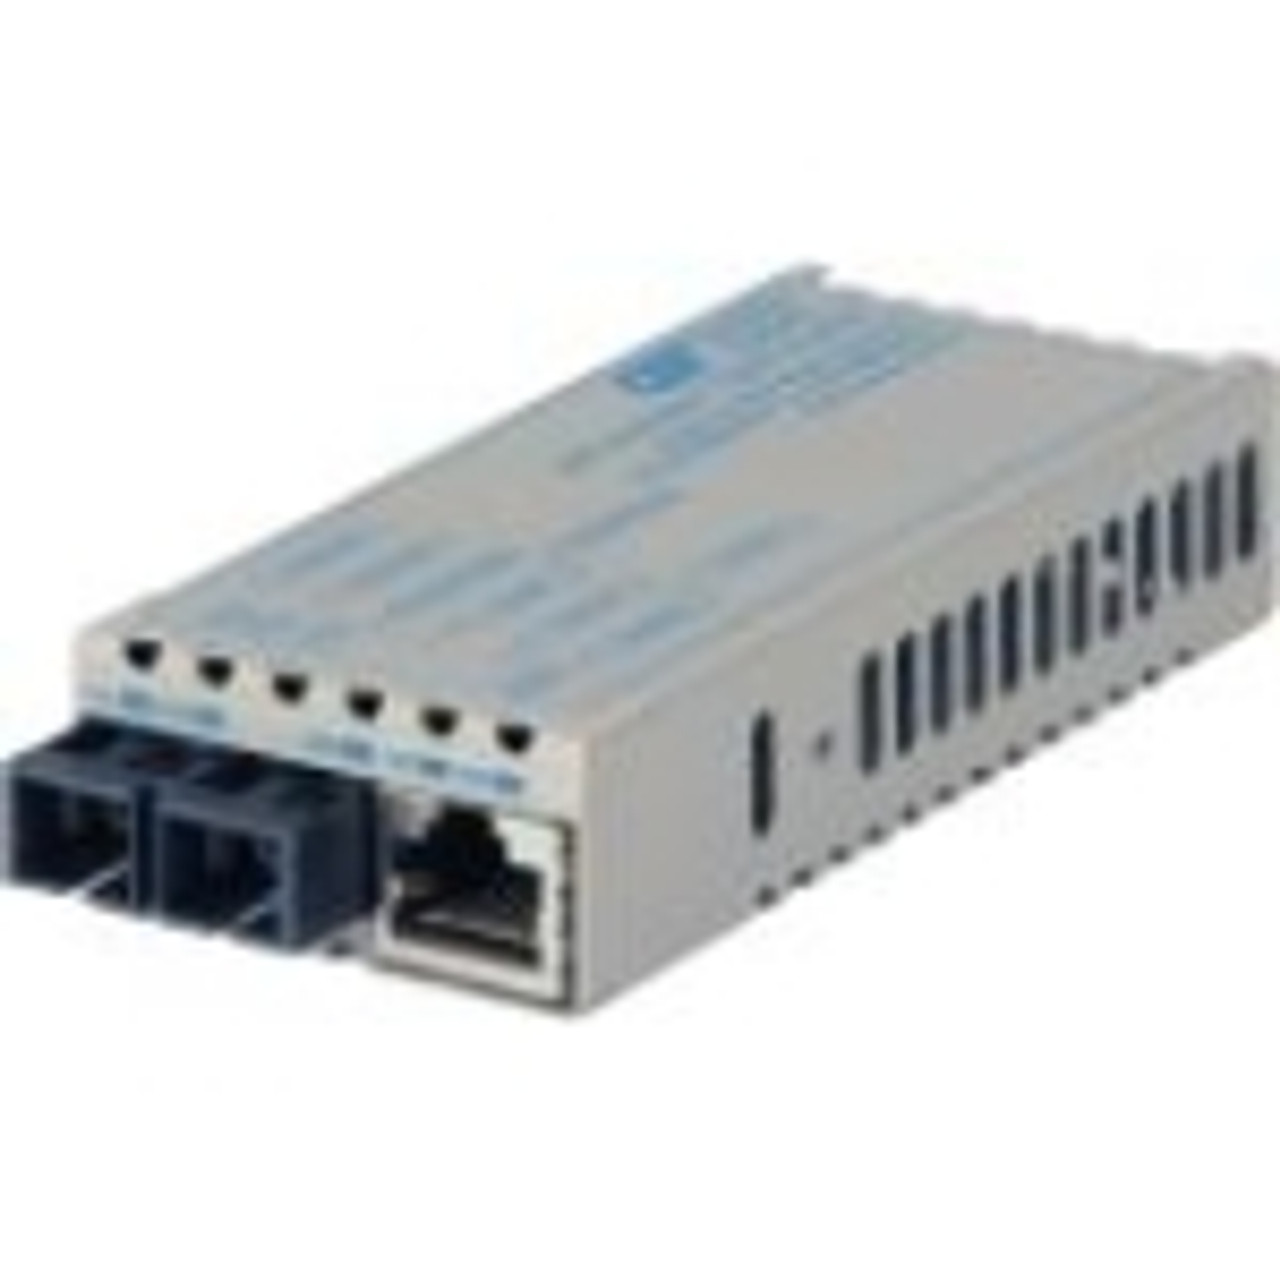 1223D-1-01 miConverter PoE/PD 10/100/1000 Gigabit Ethernet Fiber Media Converter RJ45 SC Single-Mode 12km 1 x 10/100/1000BASE-T, 1 x 1000BASE-LX, US AC & PoE